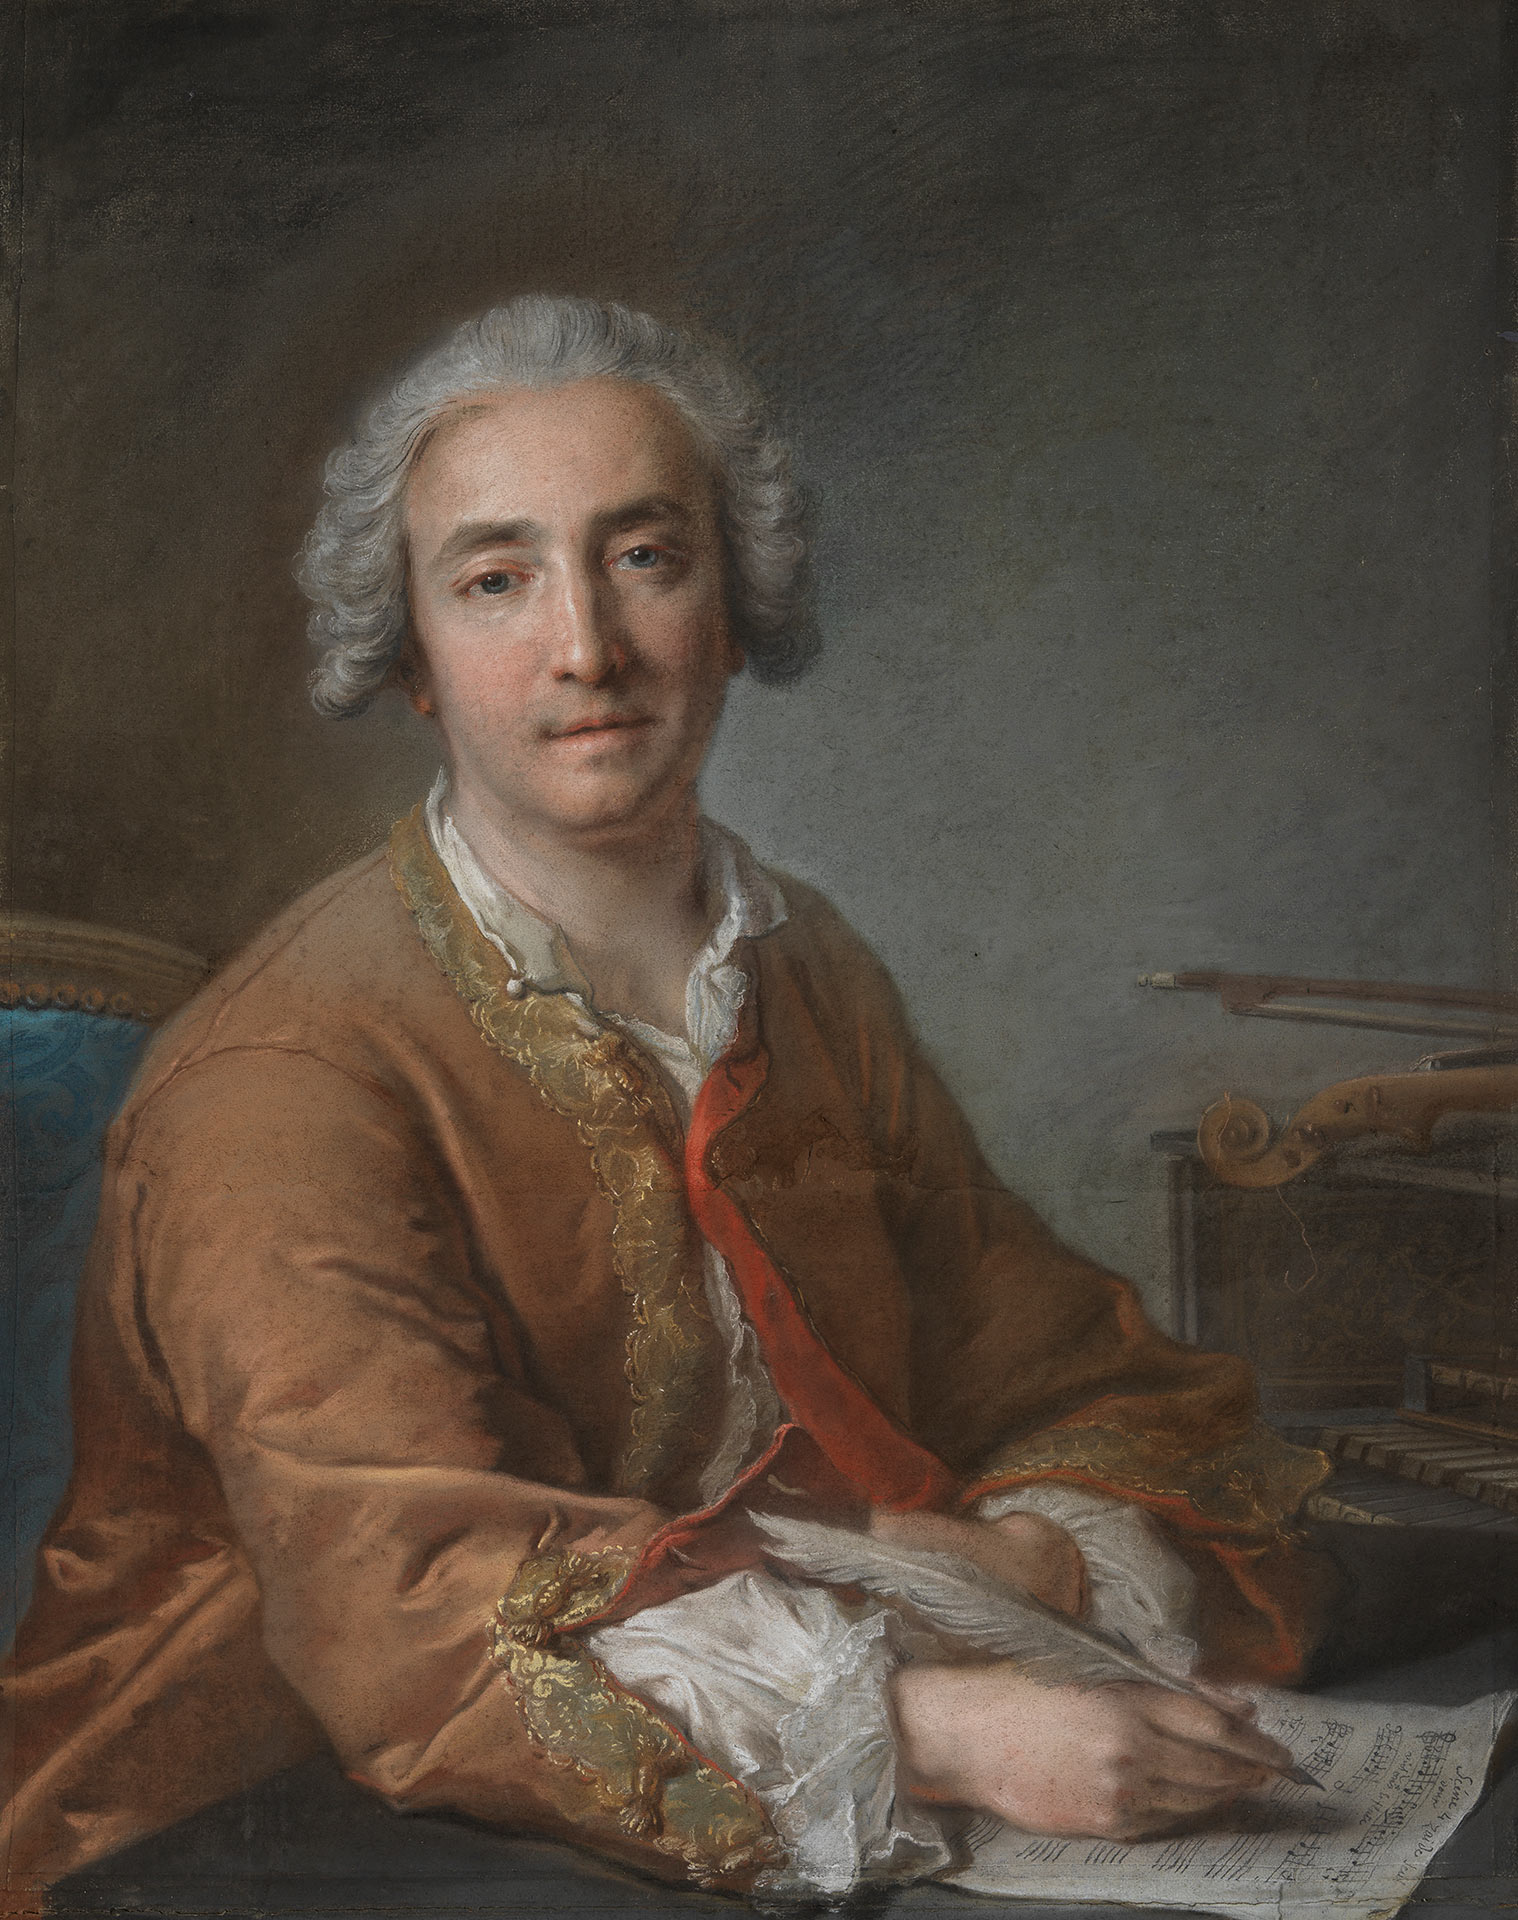 Die Abbildung zeigt den Komponisten Joseph-Nicolas-Pancrace Royer, wie er an der Oper Zaïde, seiner berühmtesten Komposition, arbeitet und von seiner Arbeit aufschaut.